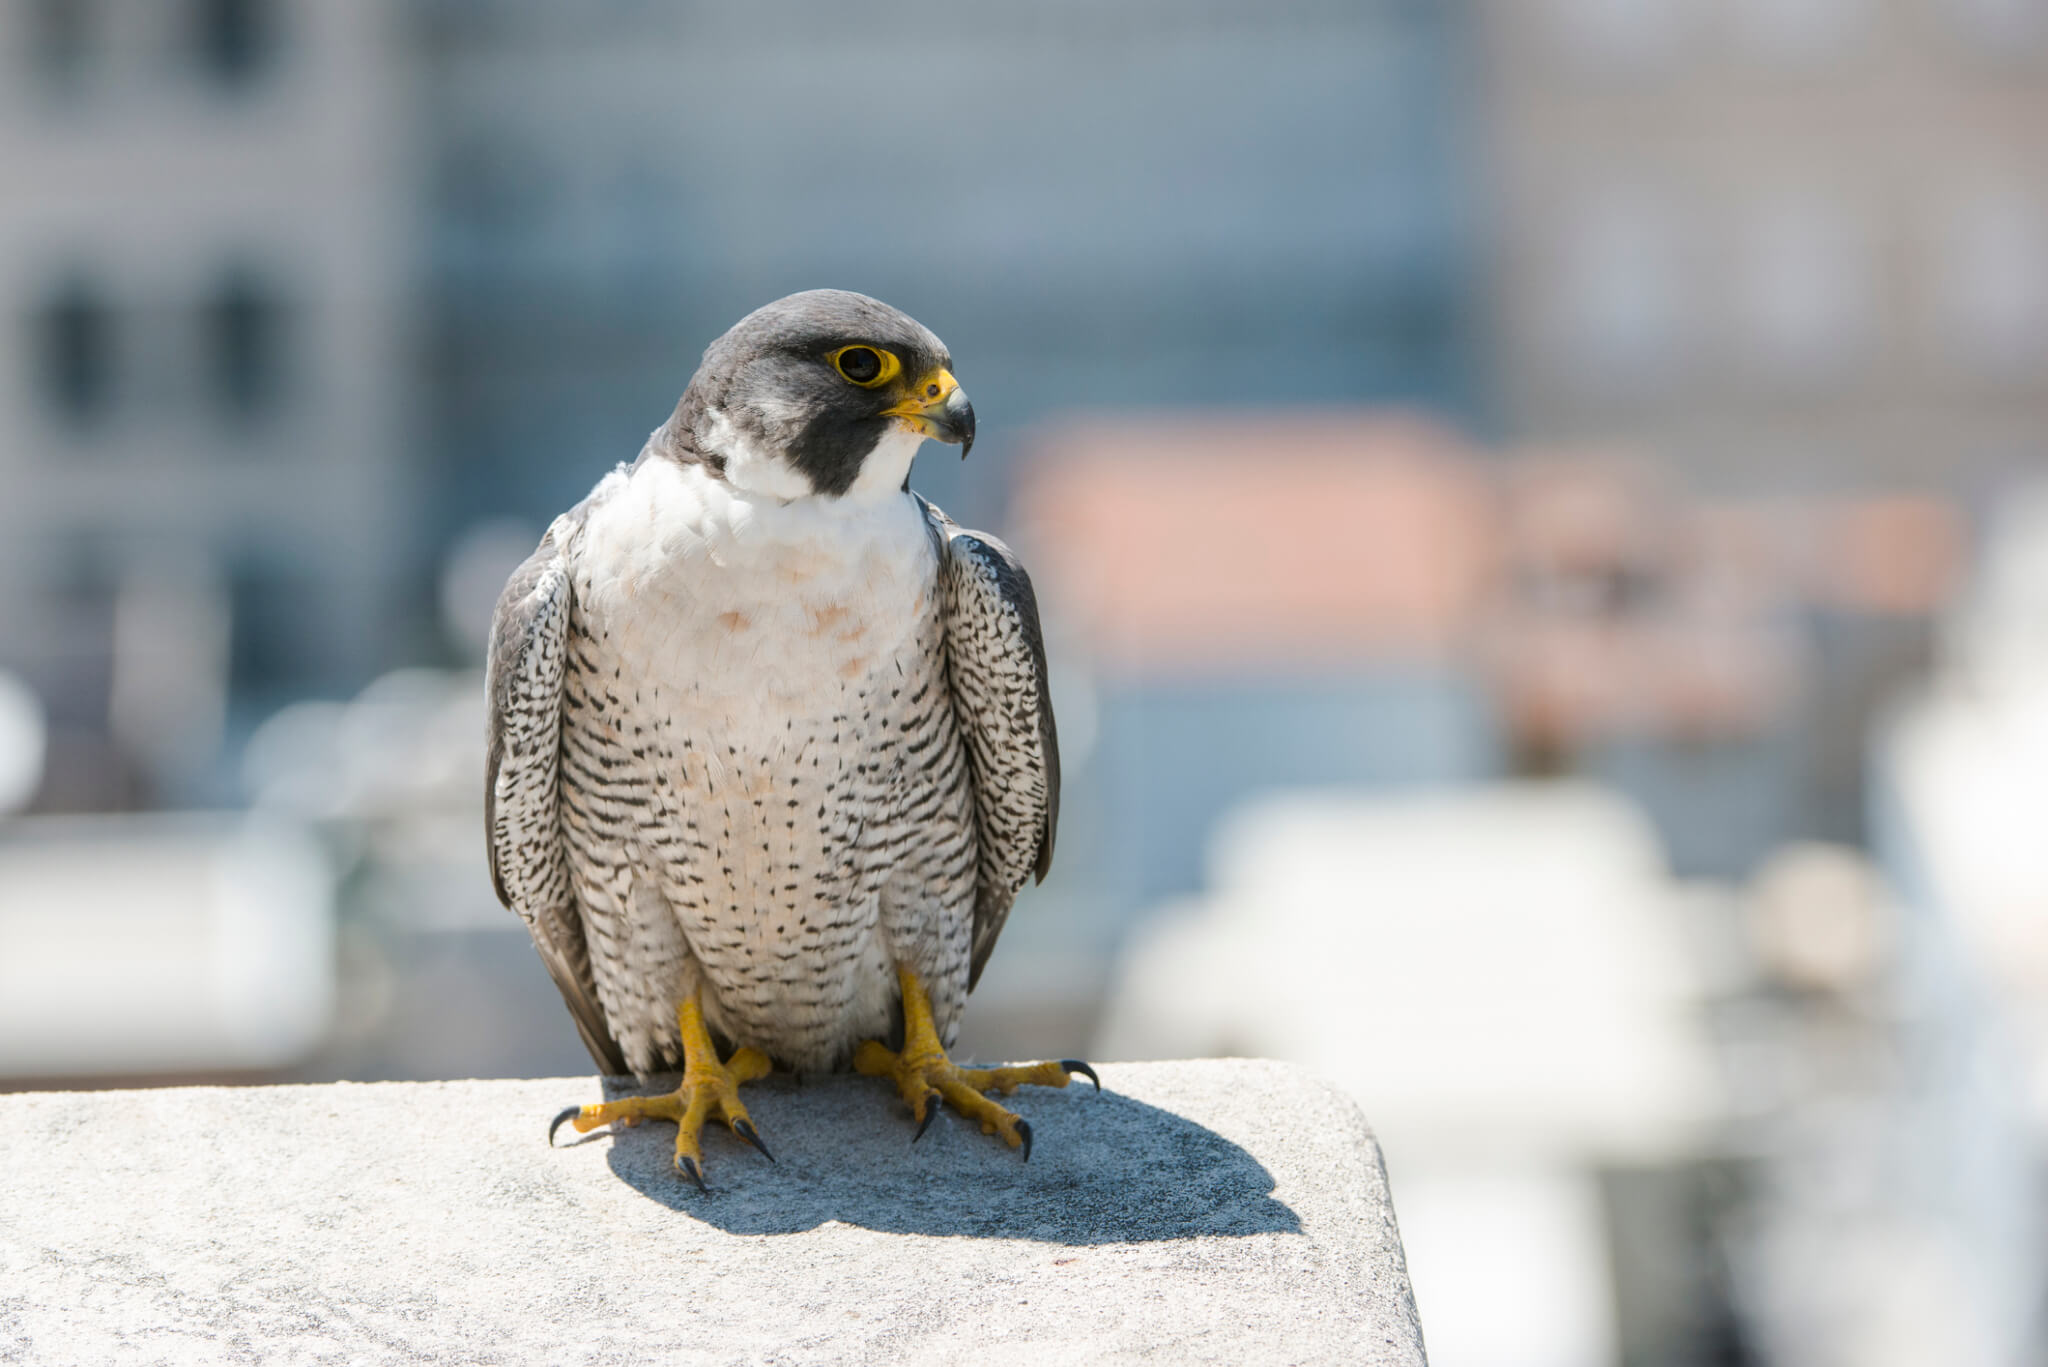 Falcon on ledge